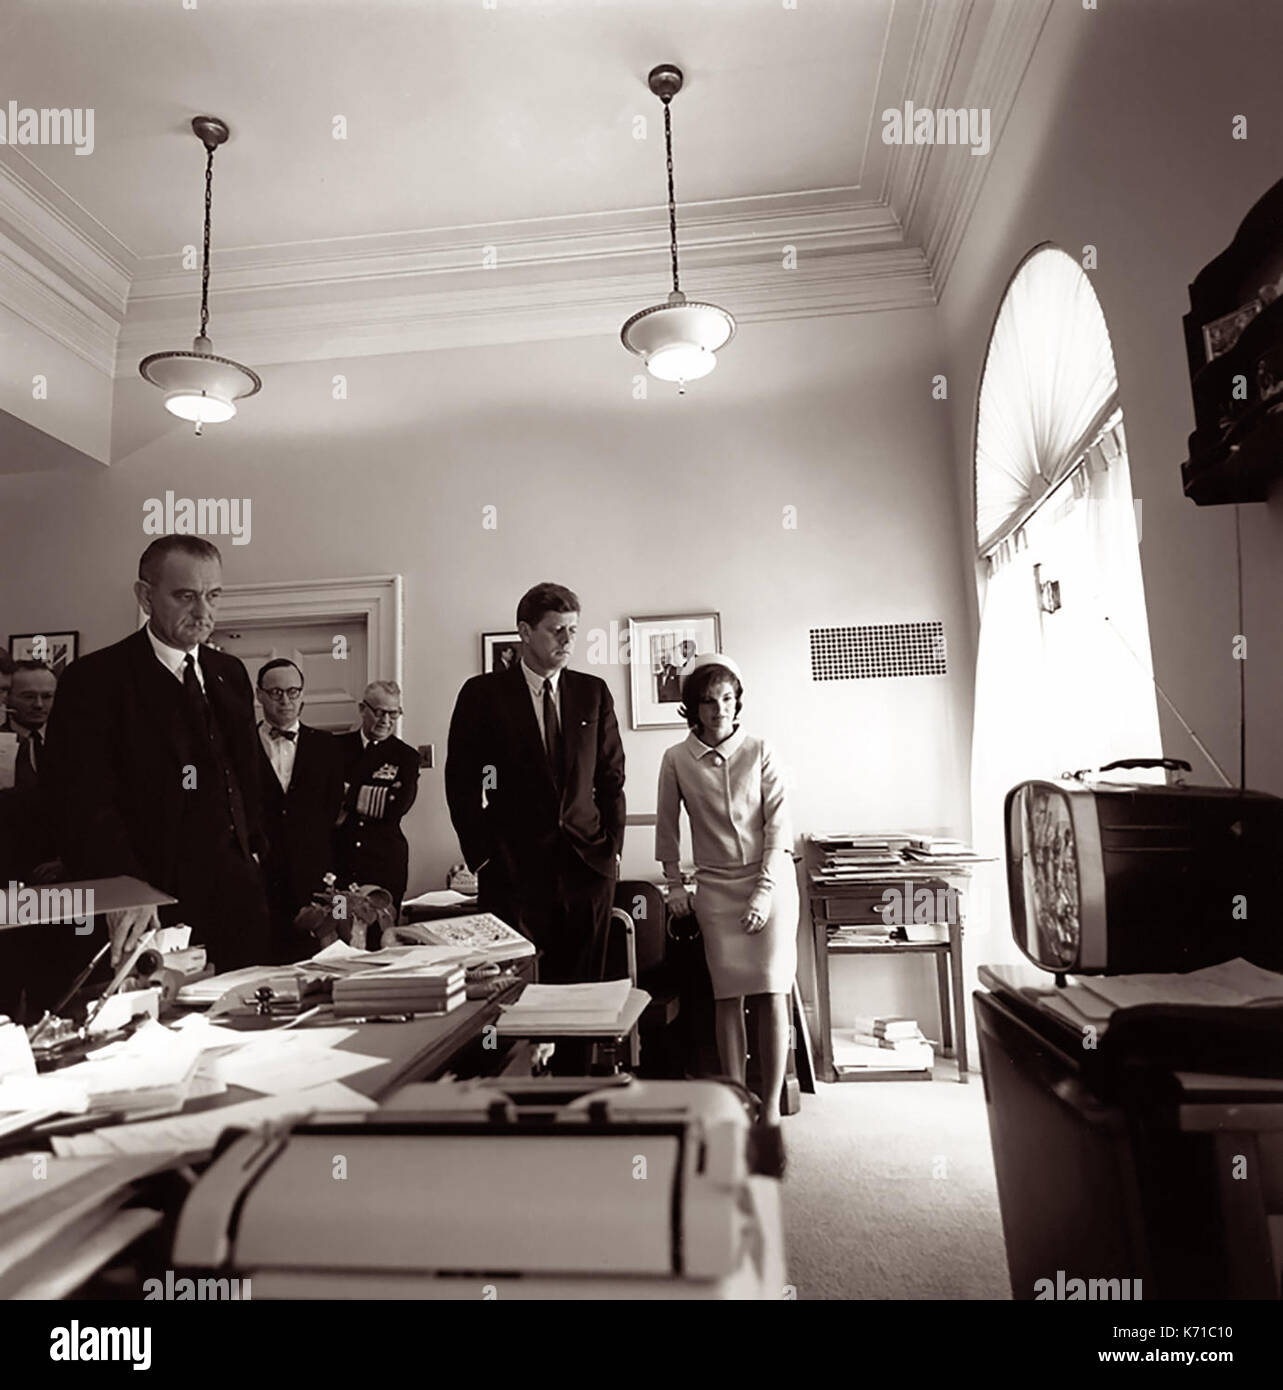 Le président John f. Kennedy regardant le décollage du premier américain dans l'espace, l'astronaute Alan Shepard b., jr., le 5 mai 1961. également sur la photo (l-r) sont vice-président Johnson, Arthur Schlesinger, adm., Arleigh Burke et Mme. Kennedy à côté de son mari. photo par Cecil stoughton dans le bureau du secrétaire du président à la maison blanche. Banque D'Images